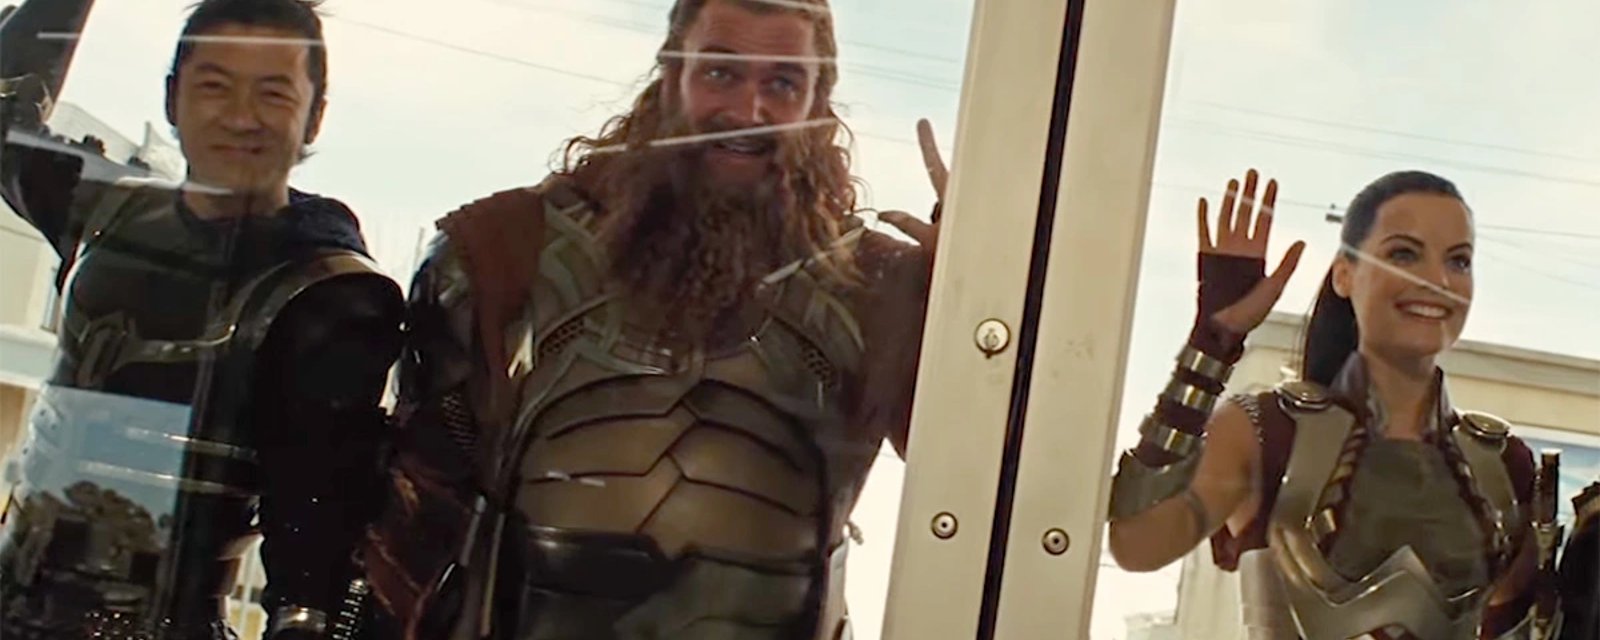 Un acteur du film Thor perd la vie tragiquement 